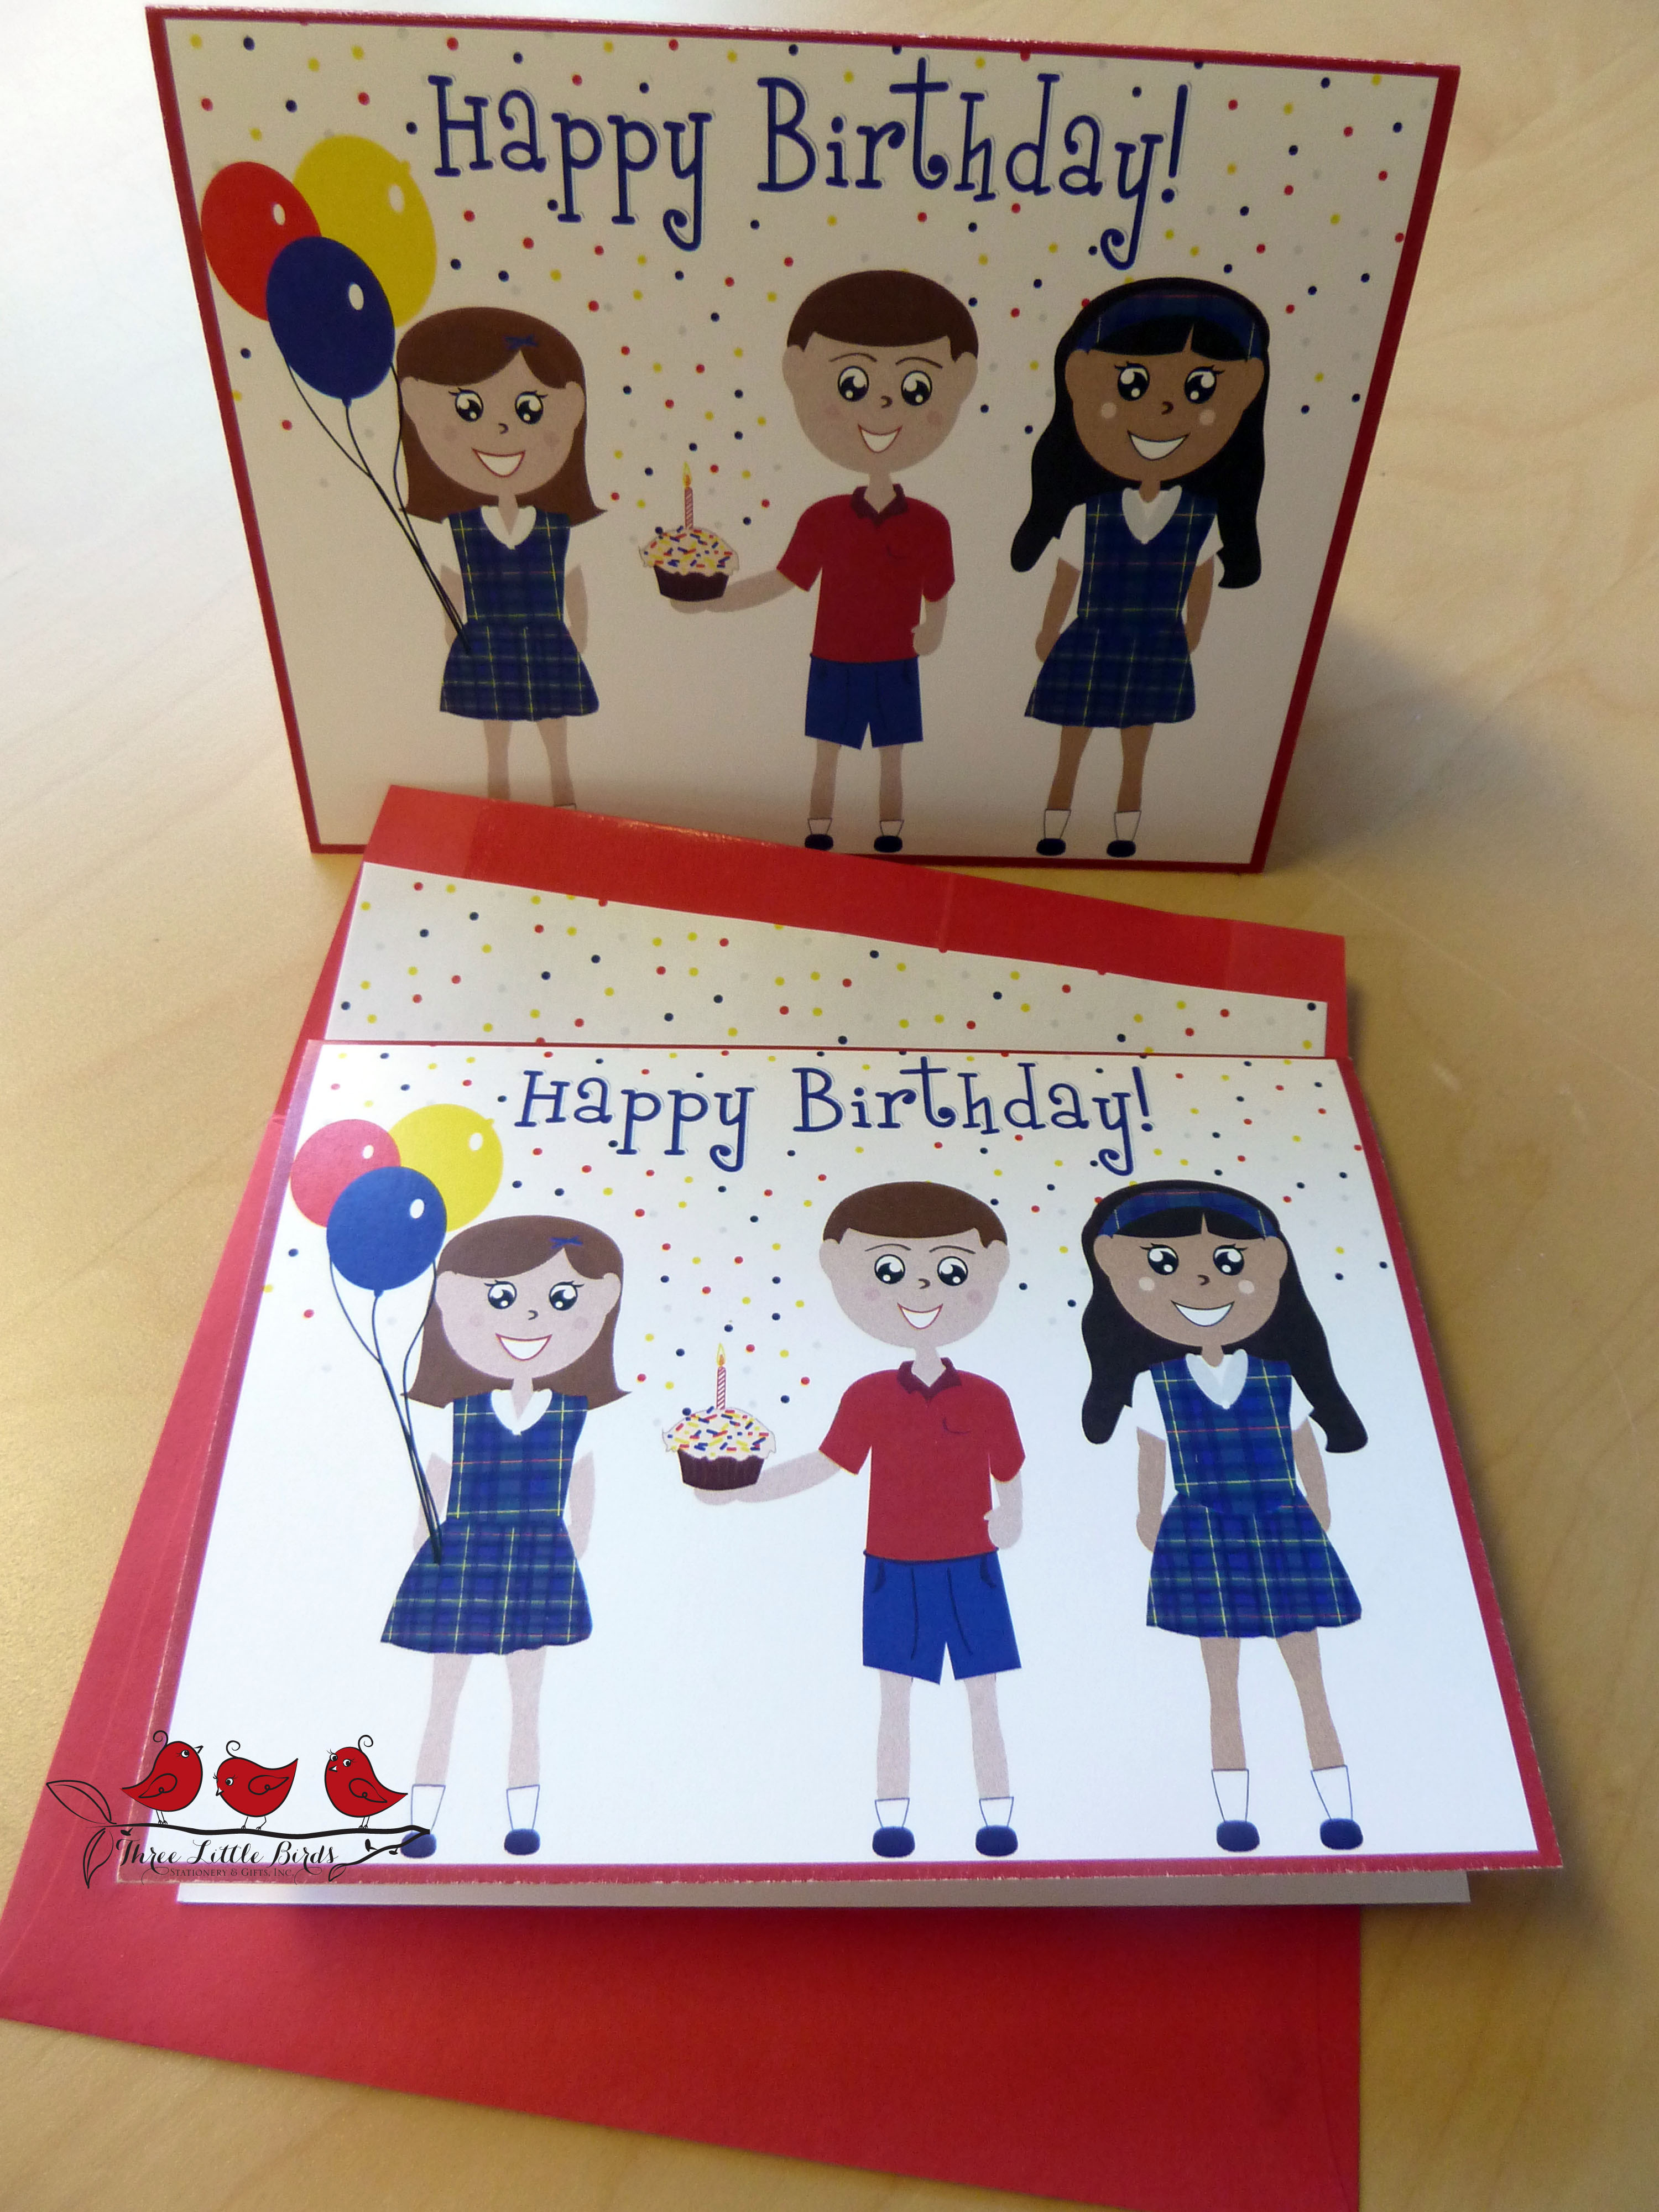 Best ideas about Birthday Card For Teacher
. Save or Pin Teacher Birthdays Now.